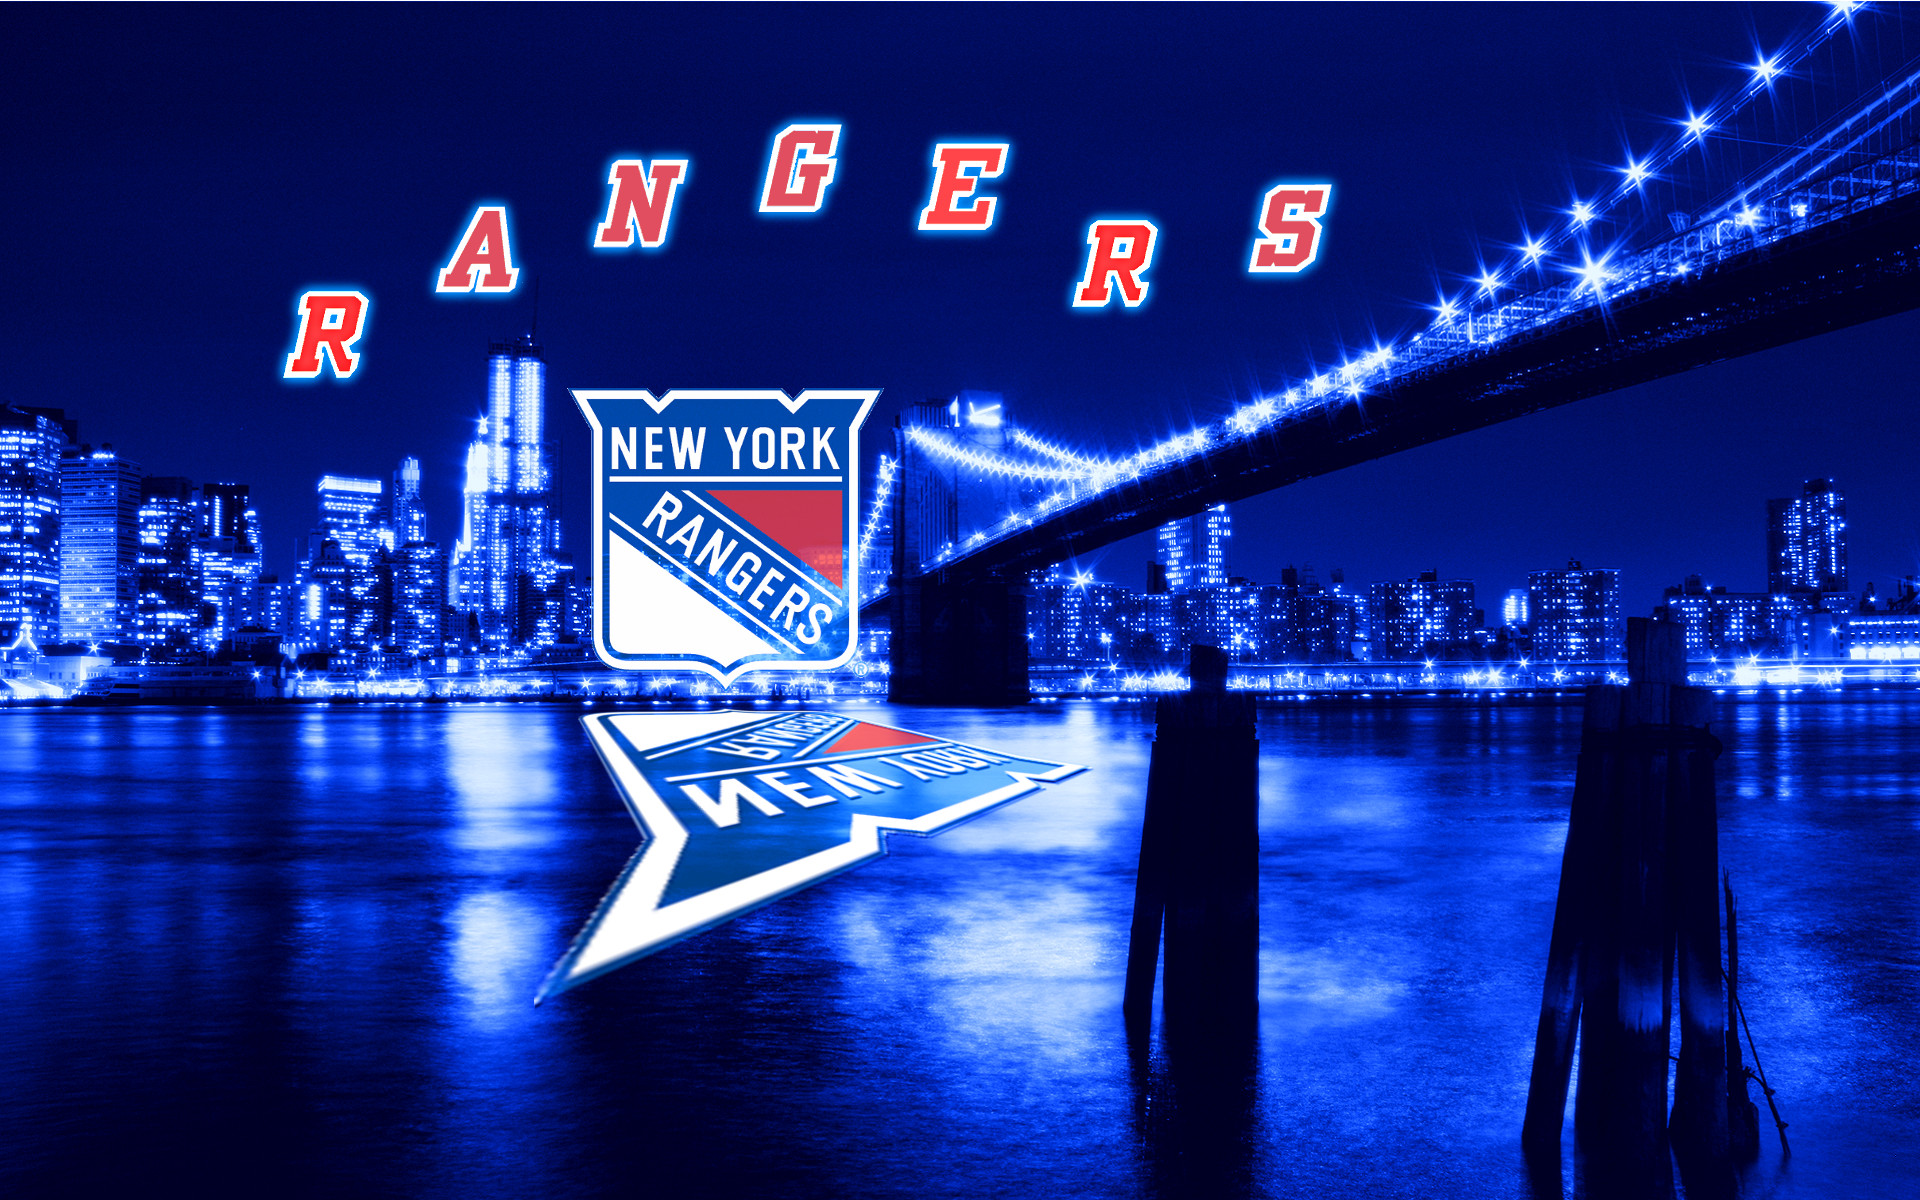 New York Rangers Wallpapers Free Download  PixelsTalkNet